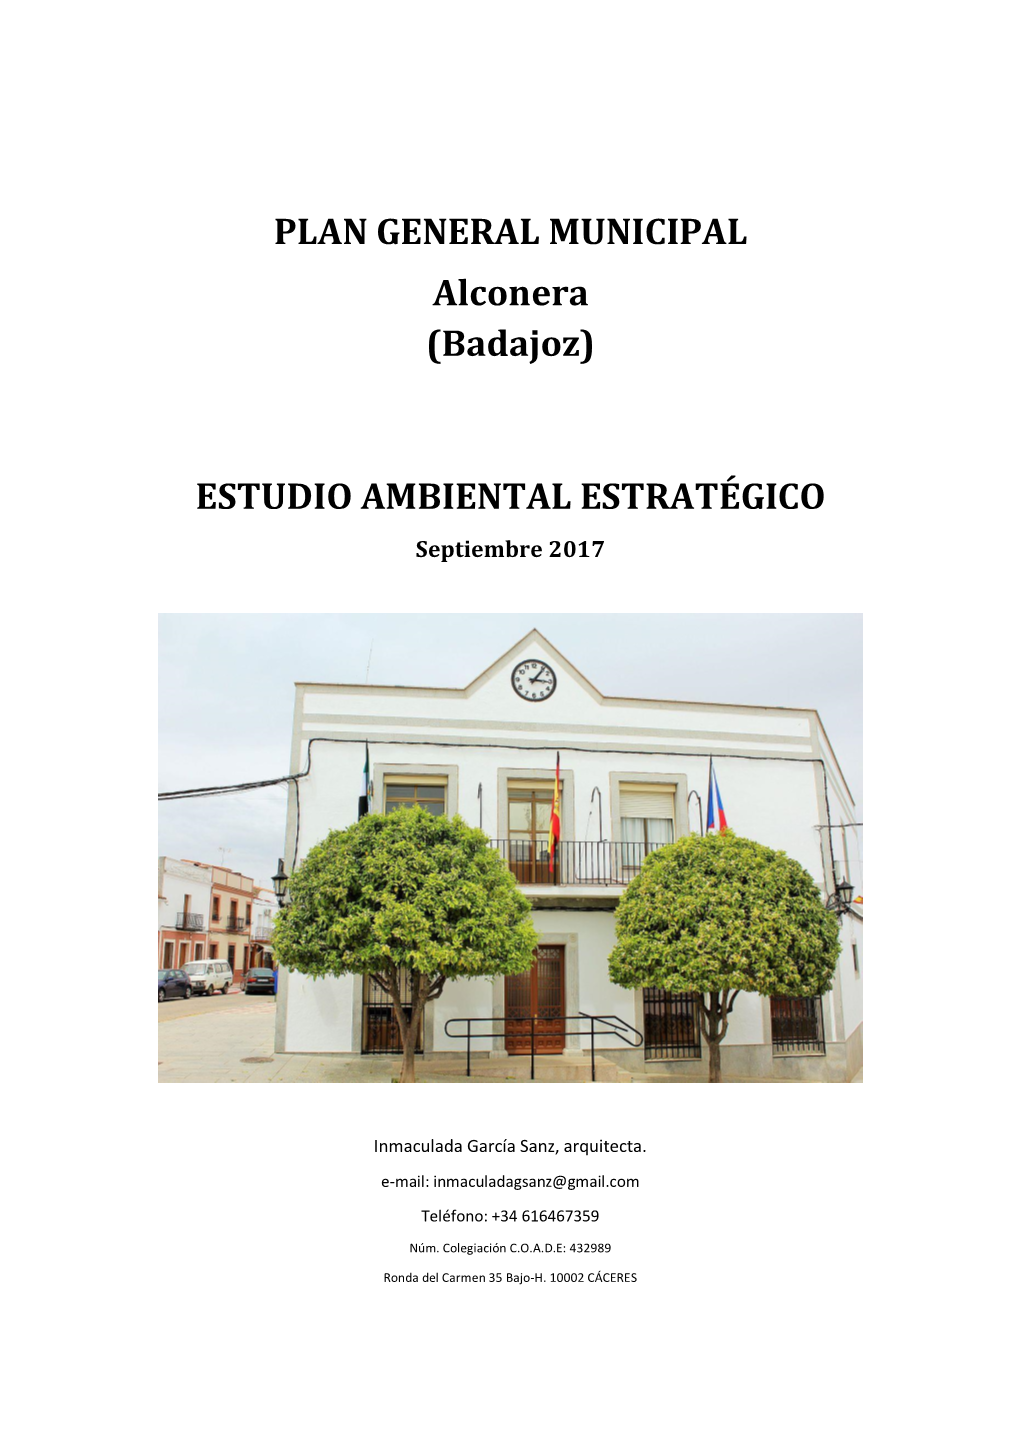 (Badajoz) ESTUDIO AMBIENTAL ESTRATÉGICO